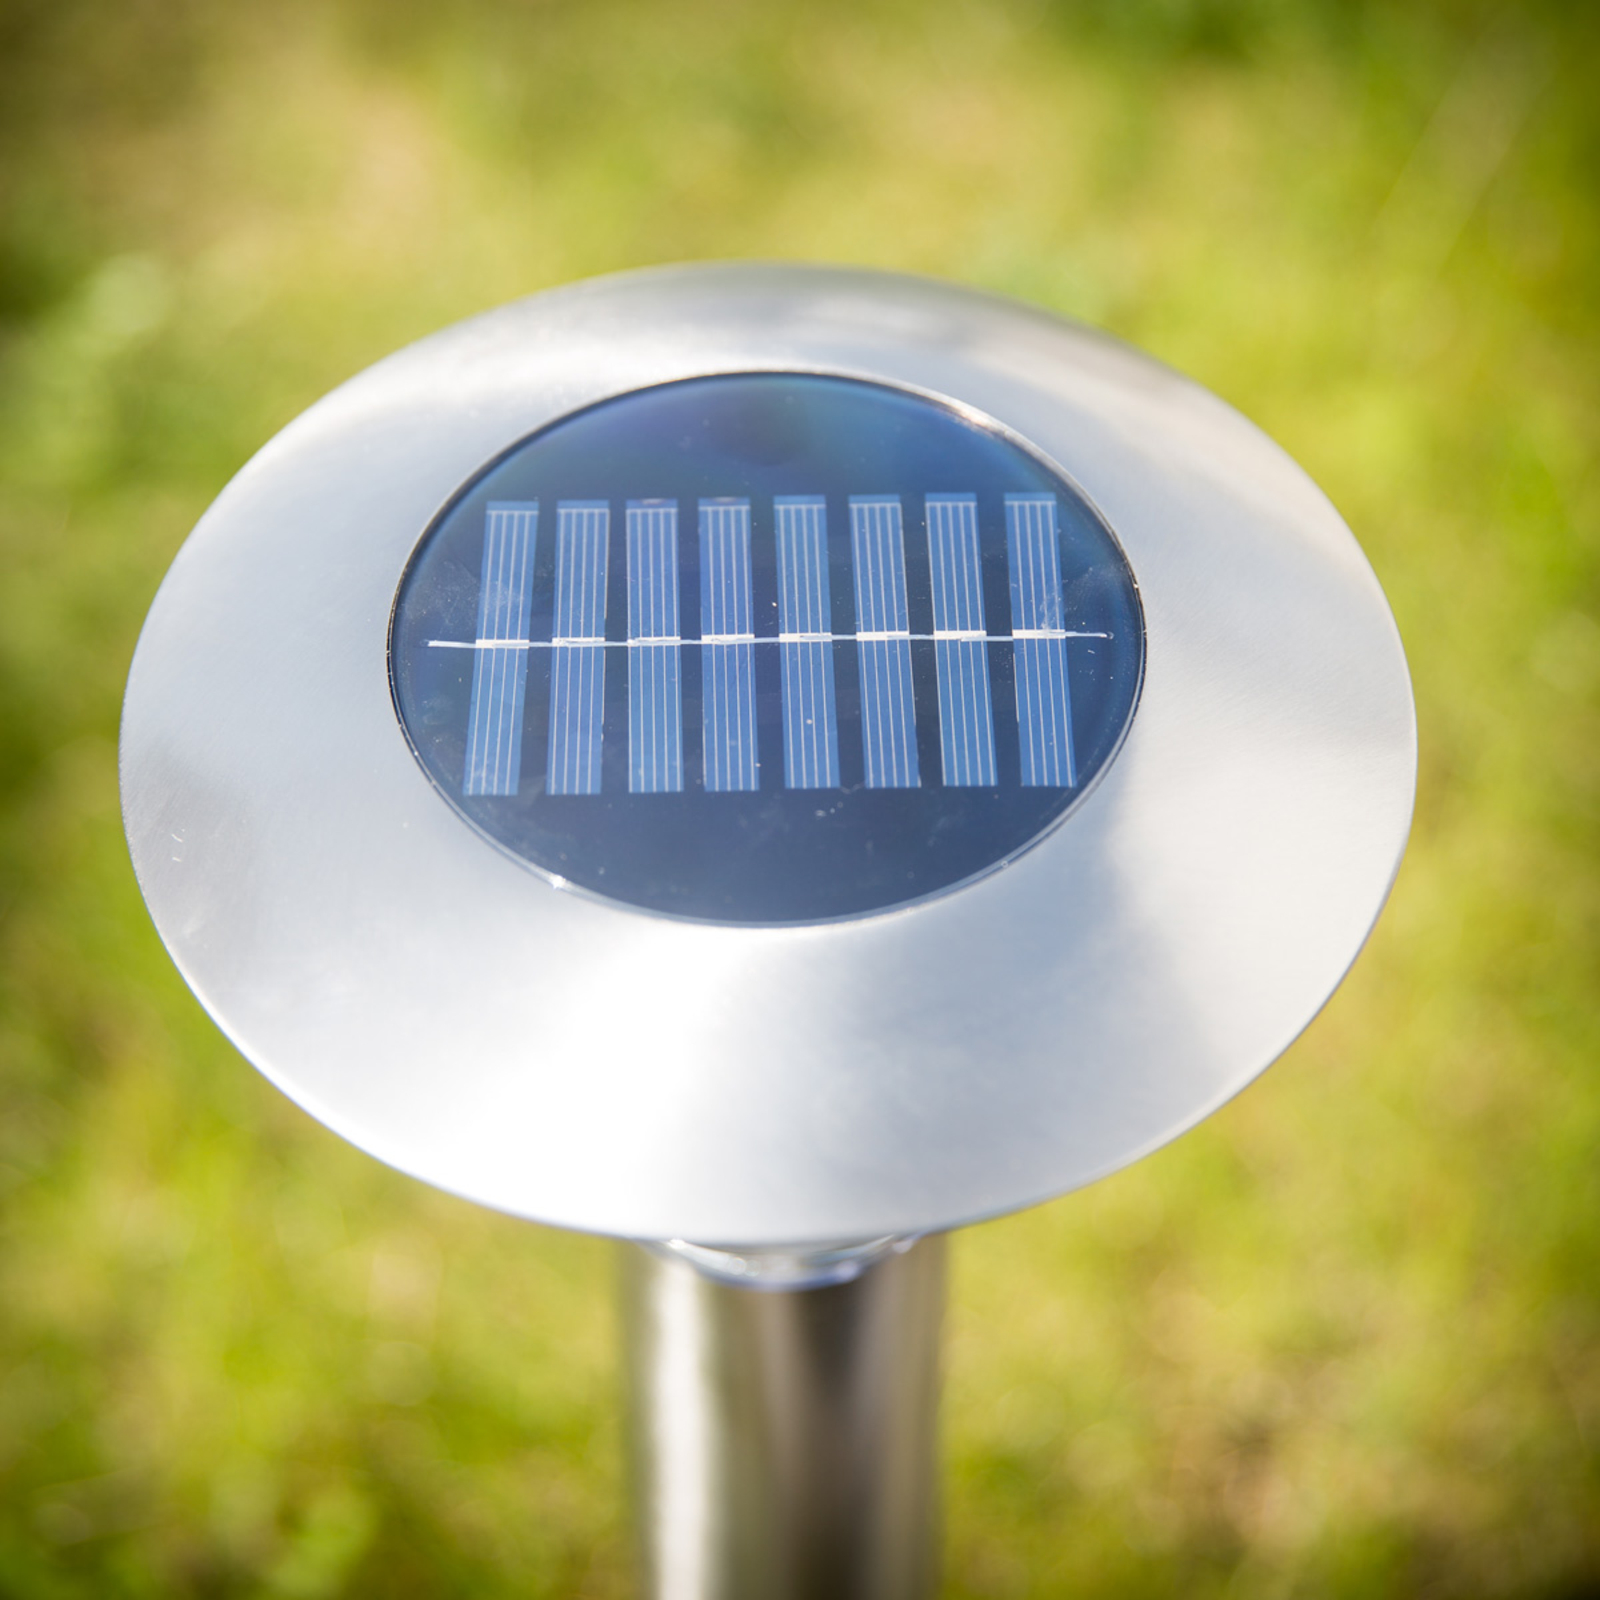 Lampada LED Jolin spuntone, alimentazione solare